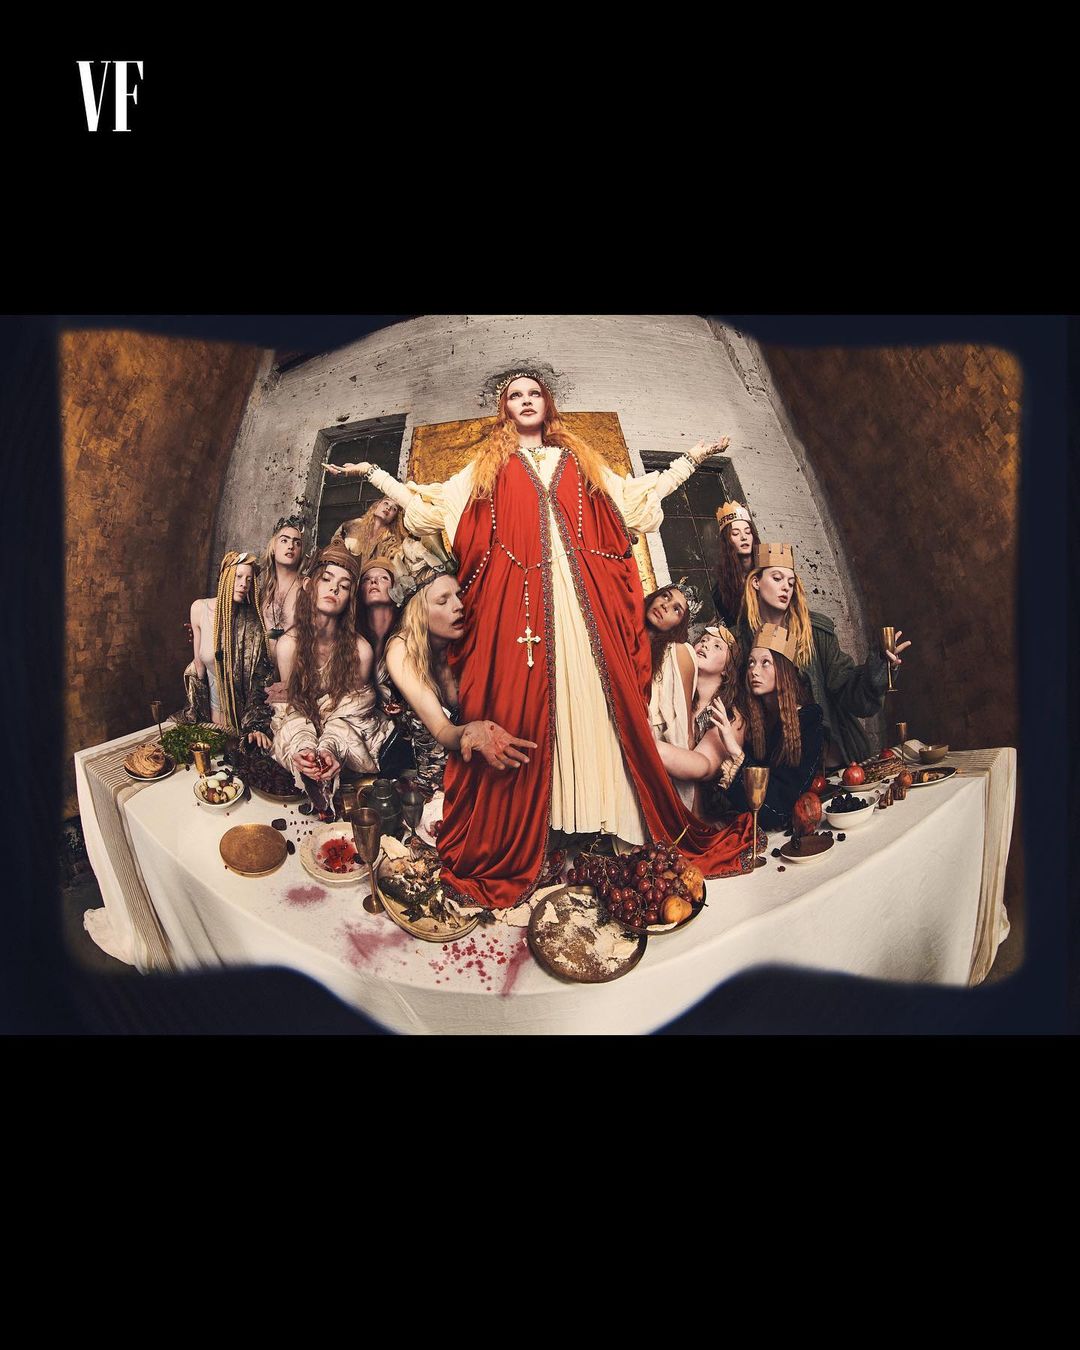 Η Μαντόνα ποζάρει σαν τον Ιησού στον Μυστικό Δείπνο (ΦΩΤΟ)